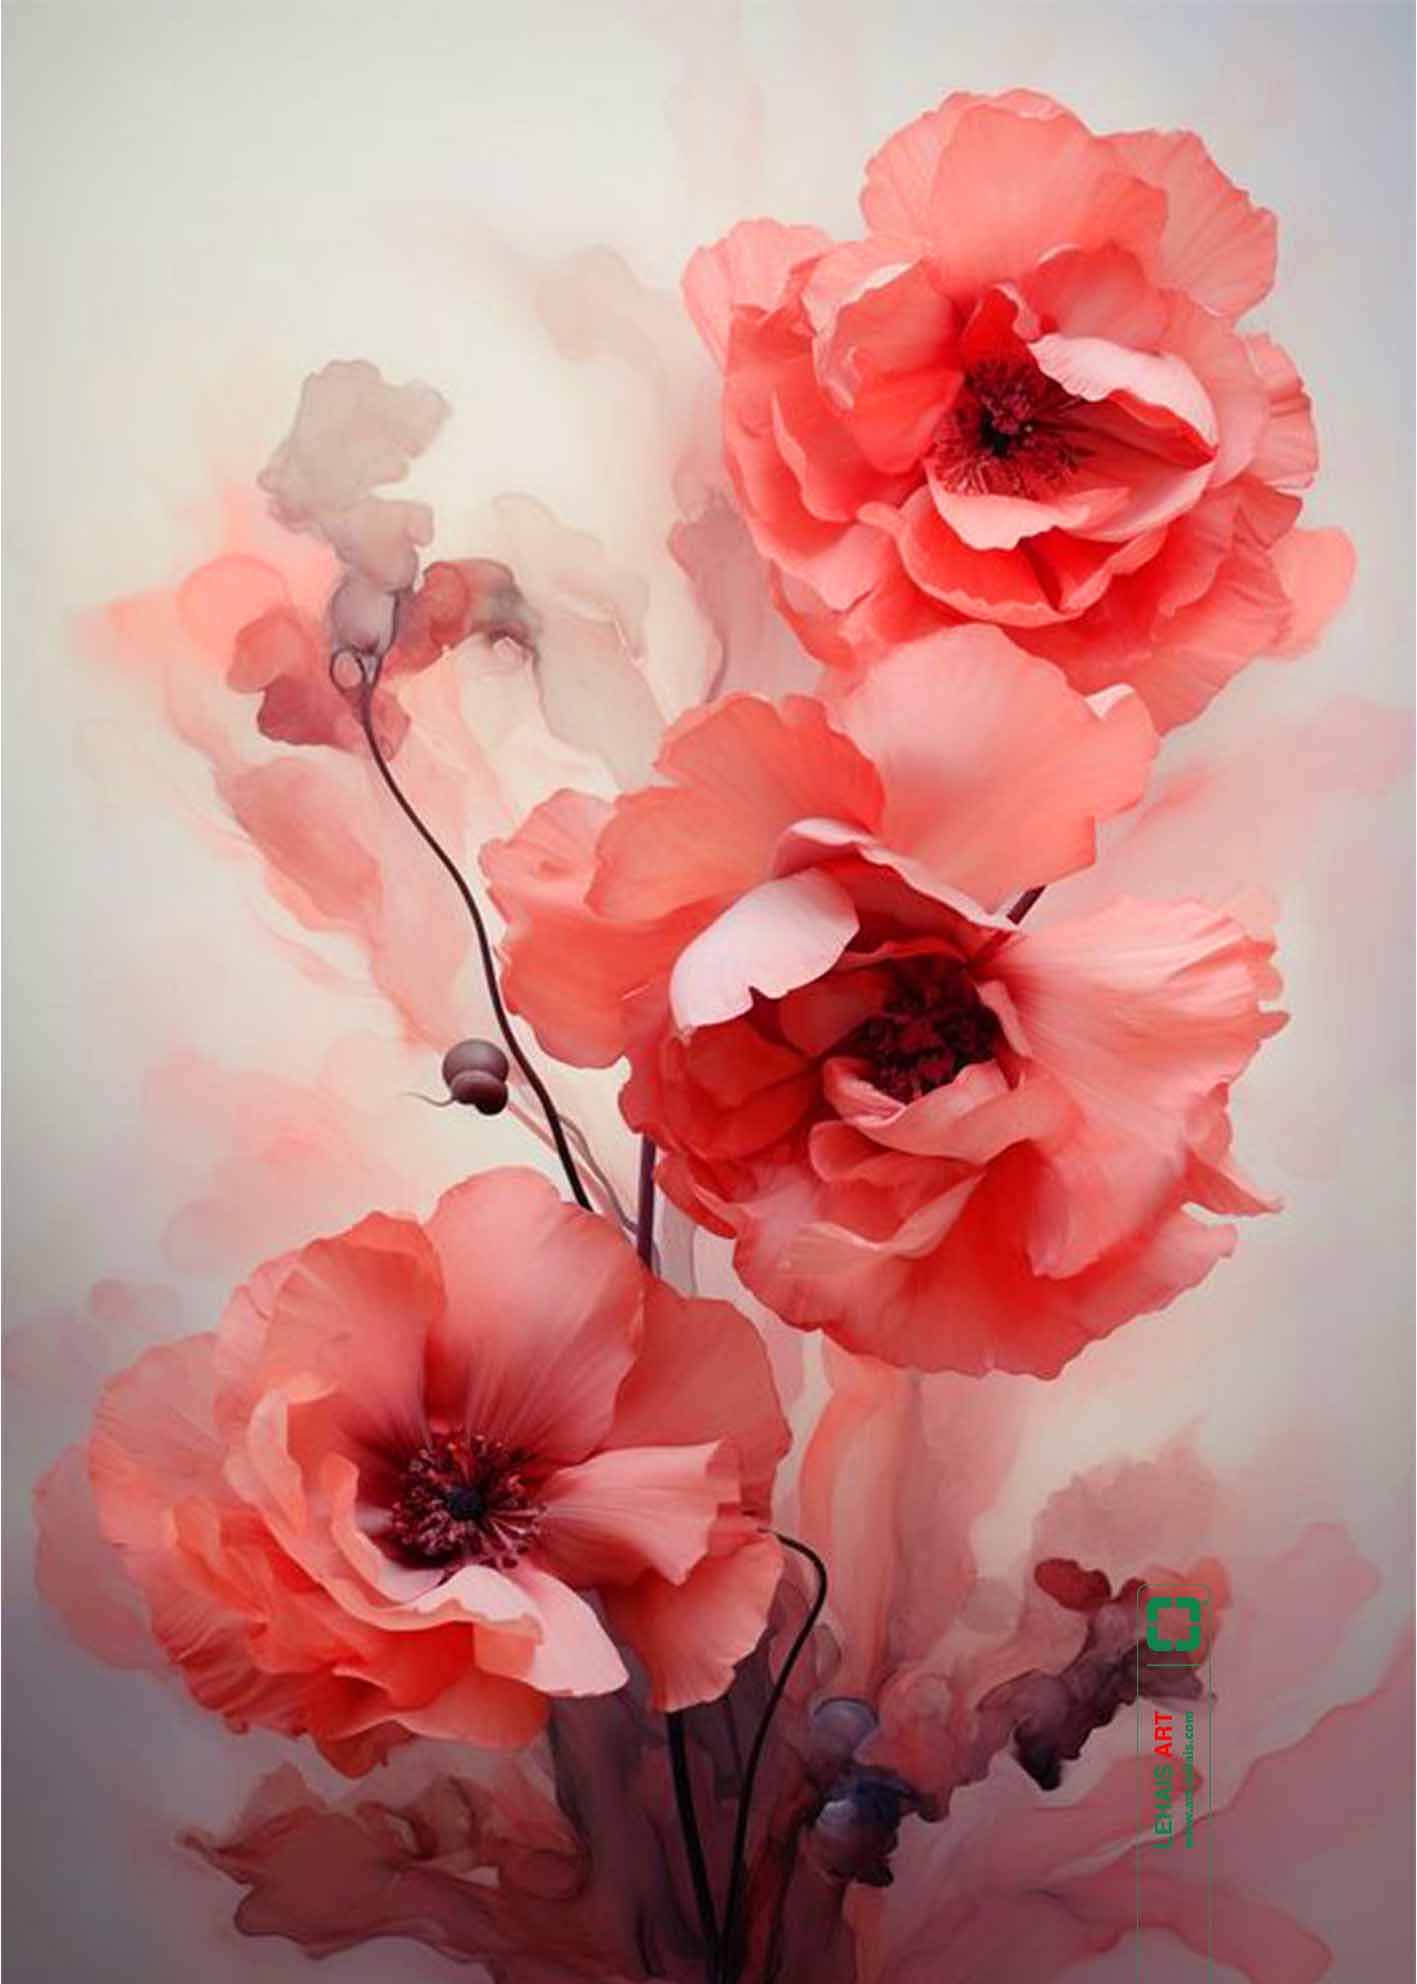 Tranh sơn dầu tĩnh vật vẽ Hoa Cẩm Chướng Đỏ theo phong cách Hiện Đại - TSD735LHAR